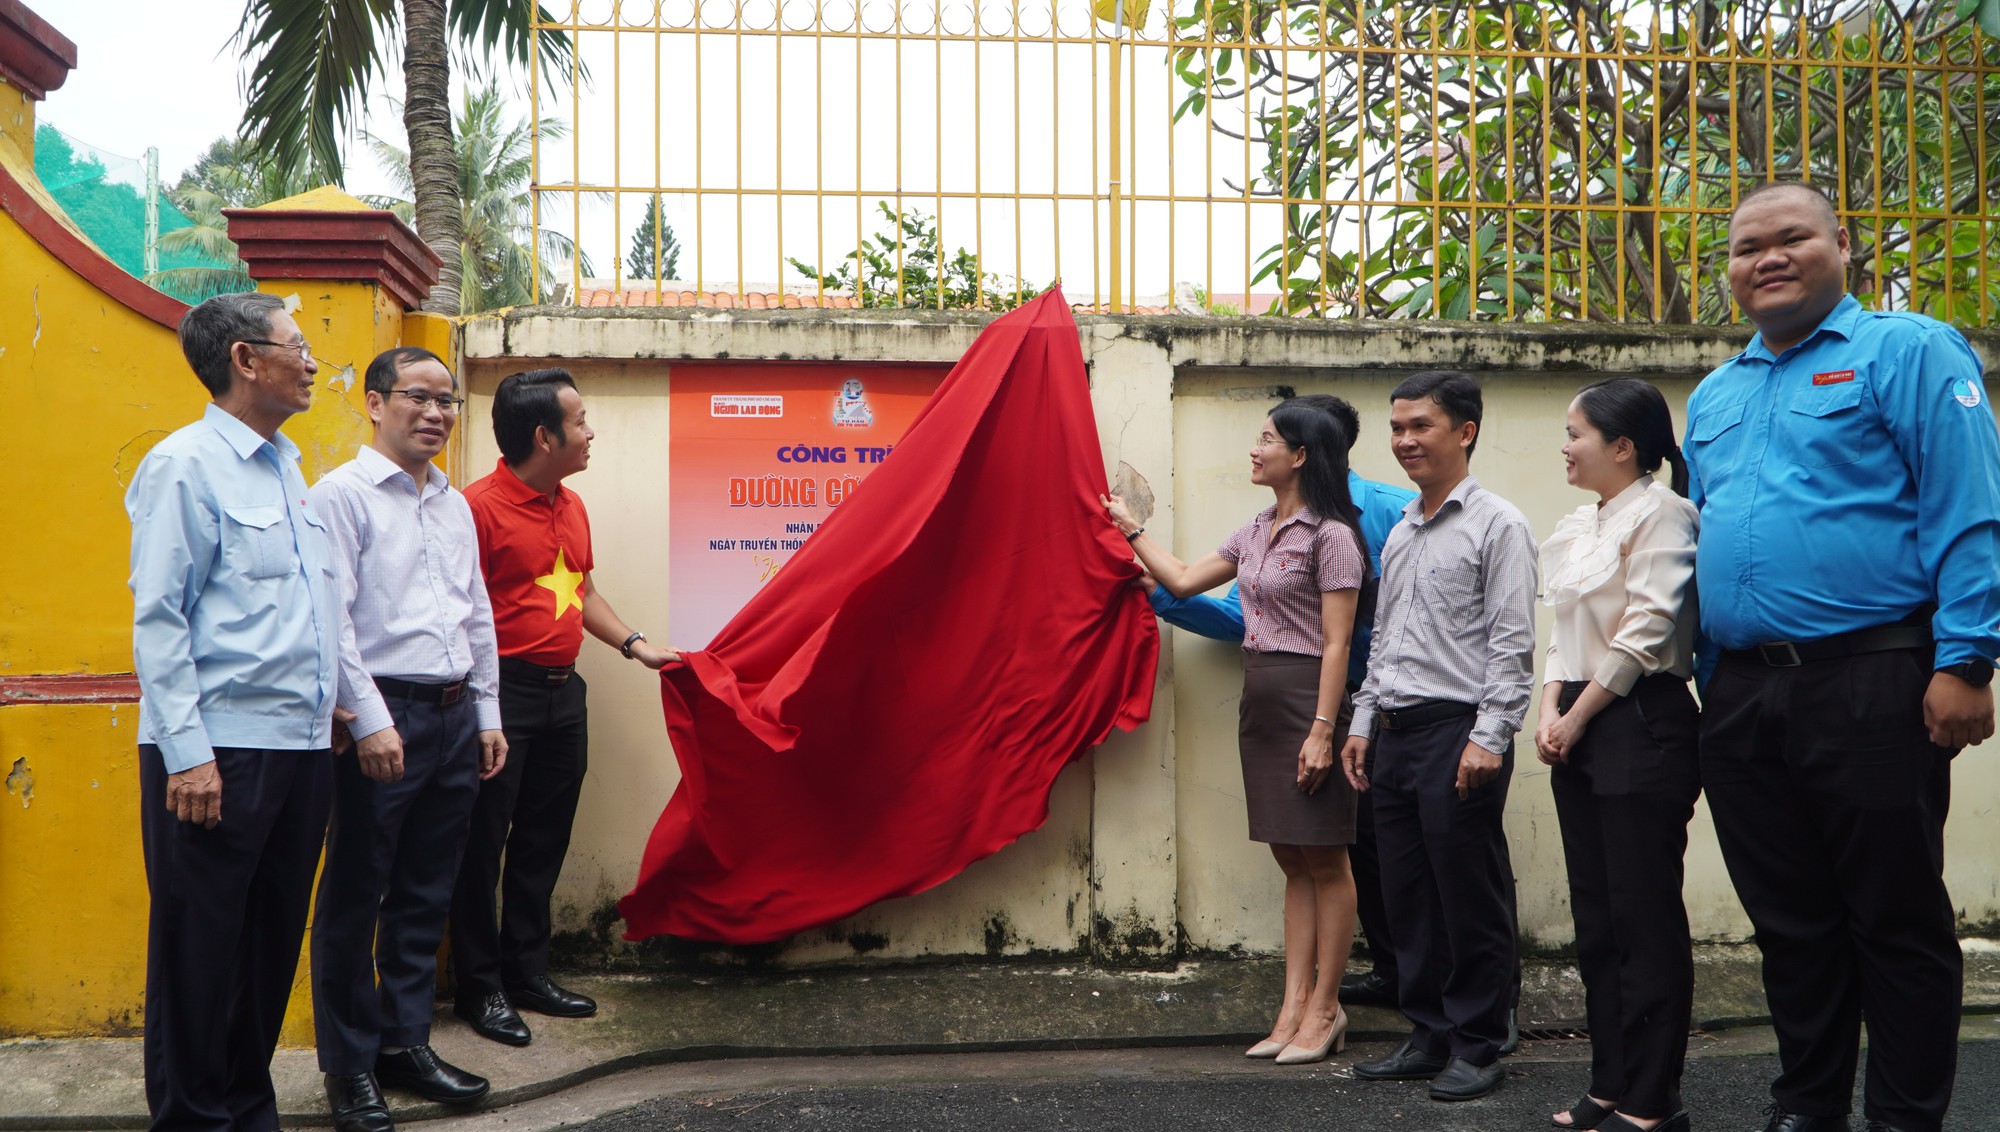 Đường vào 10 di tích lịch sử và địa chỉ đỏ của quận Phú Nhuận sẽ rợp bóng cờ Tổ quốc - Ảnh 5.